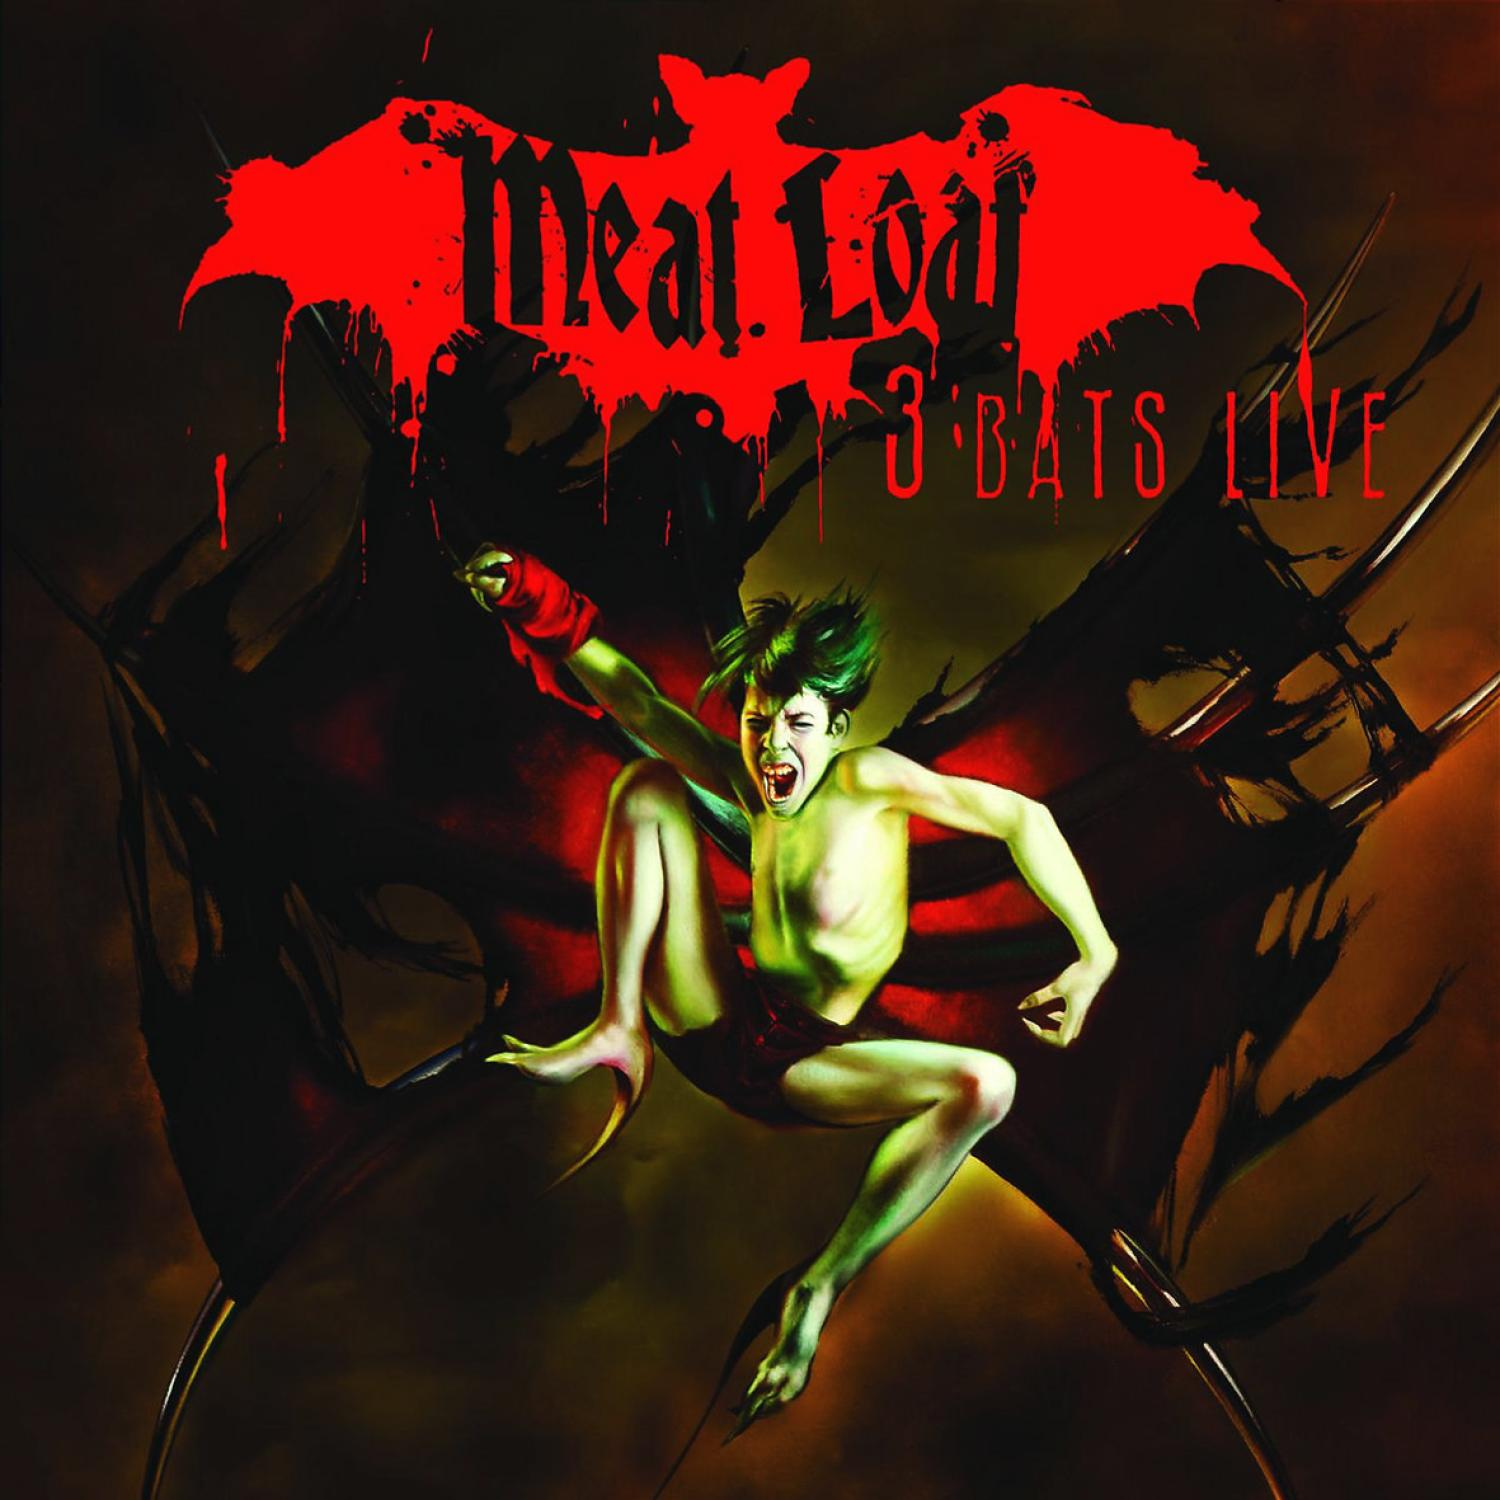 Meat Live 3 (CD) Bats - Loaf -